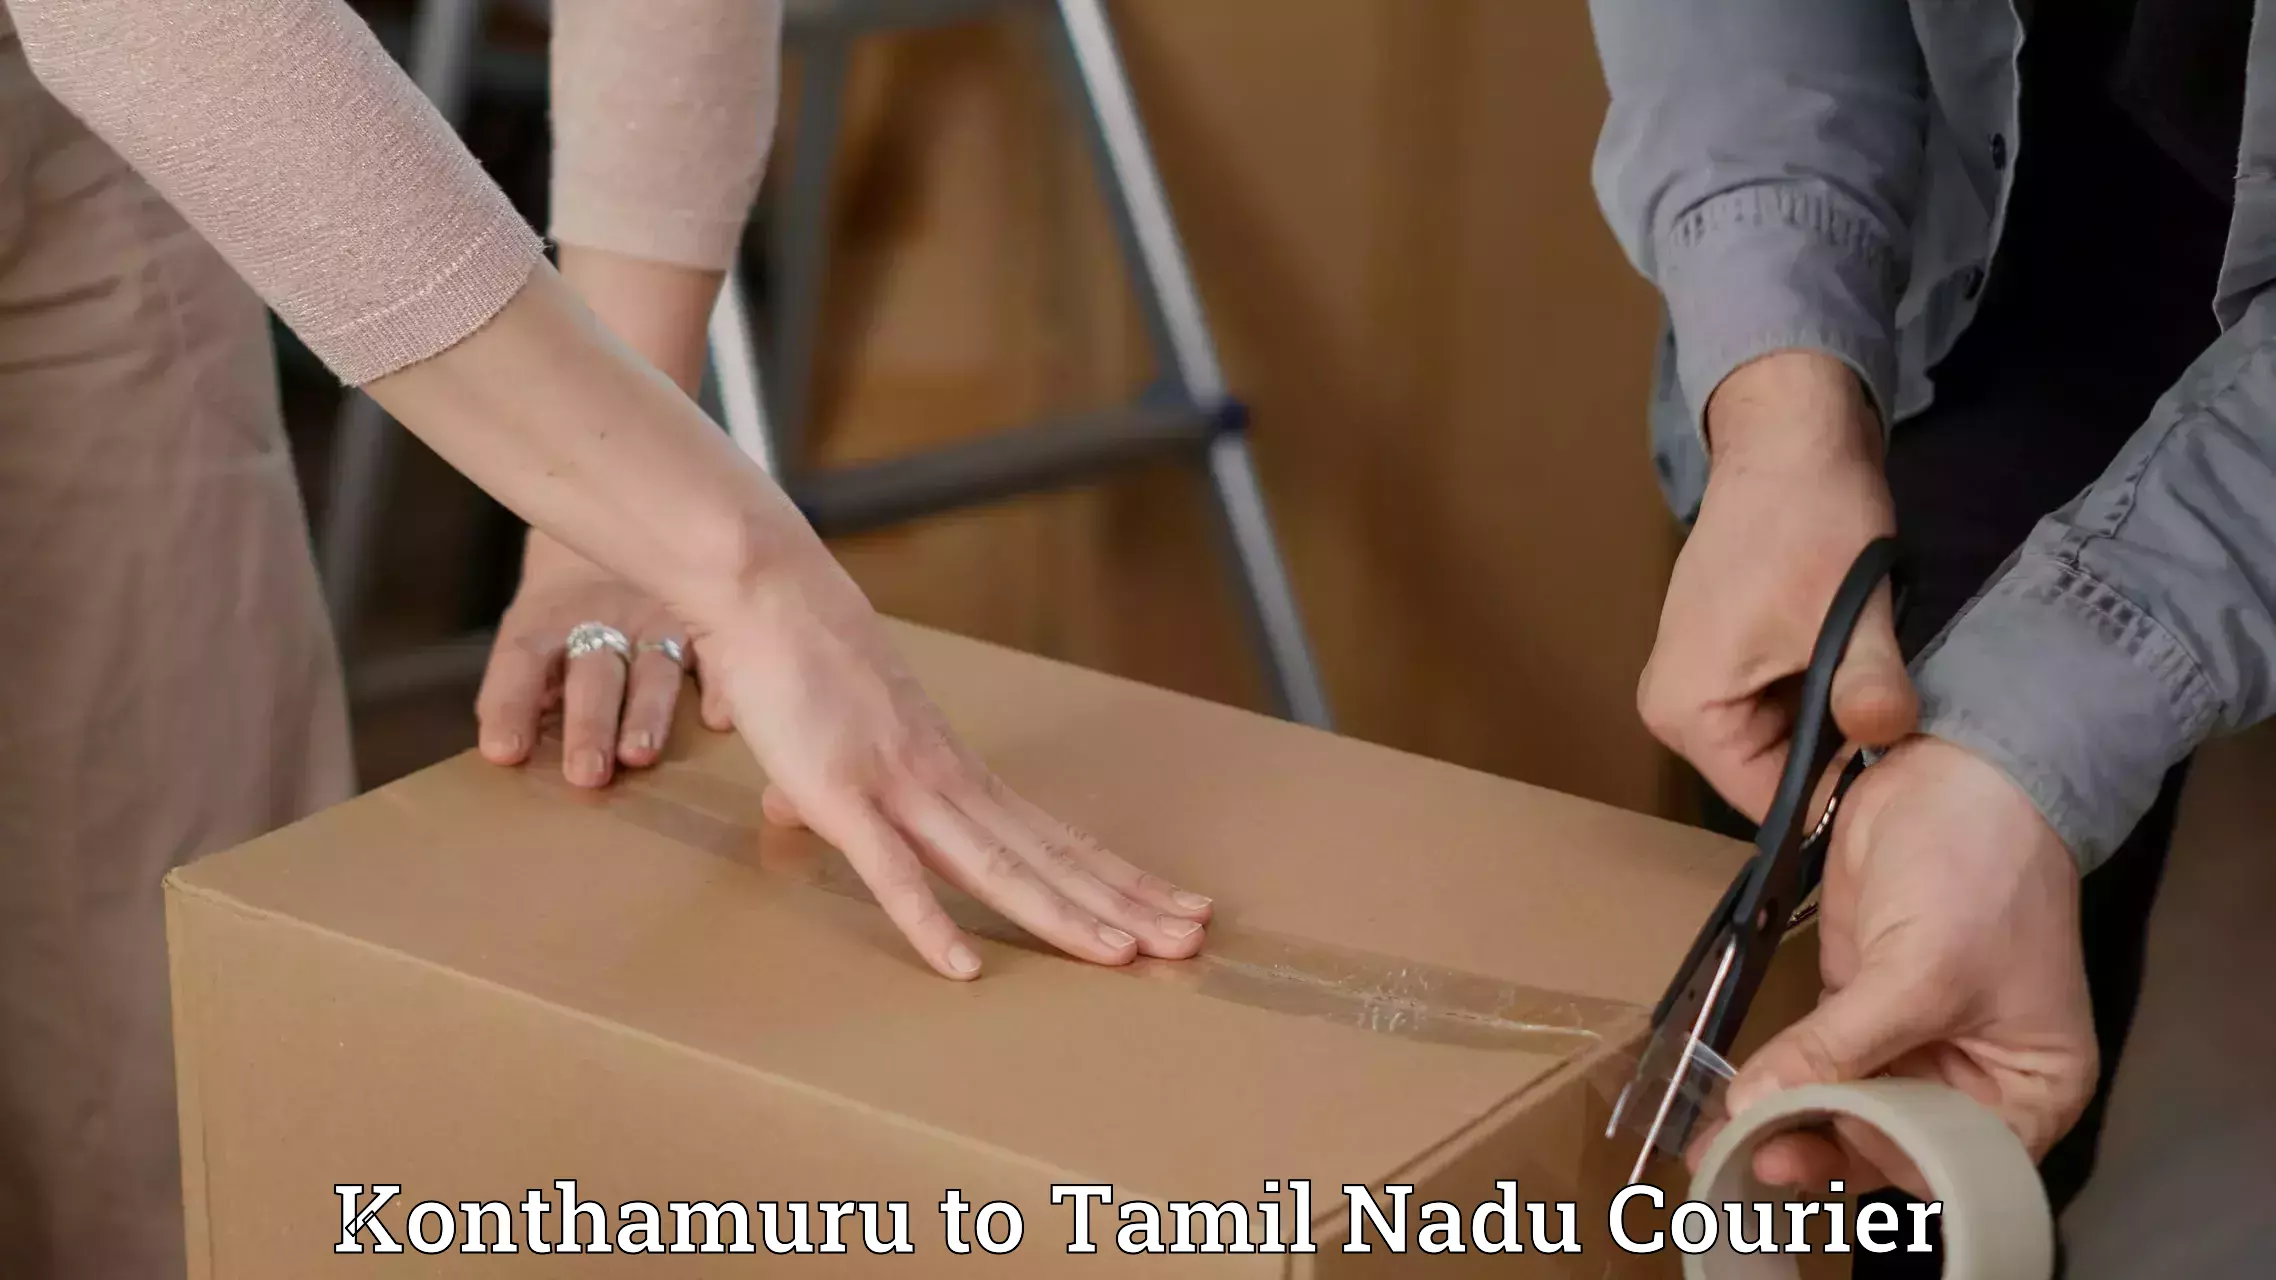 Customized delivery solutions Konthamuru to Tirukalukundram